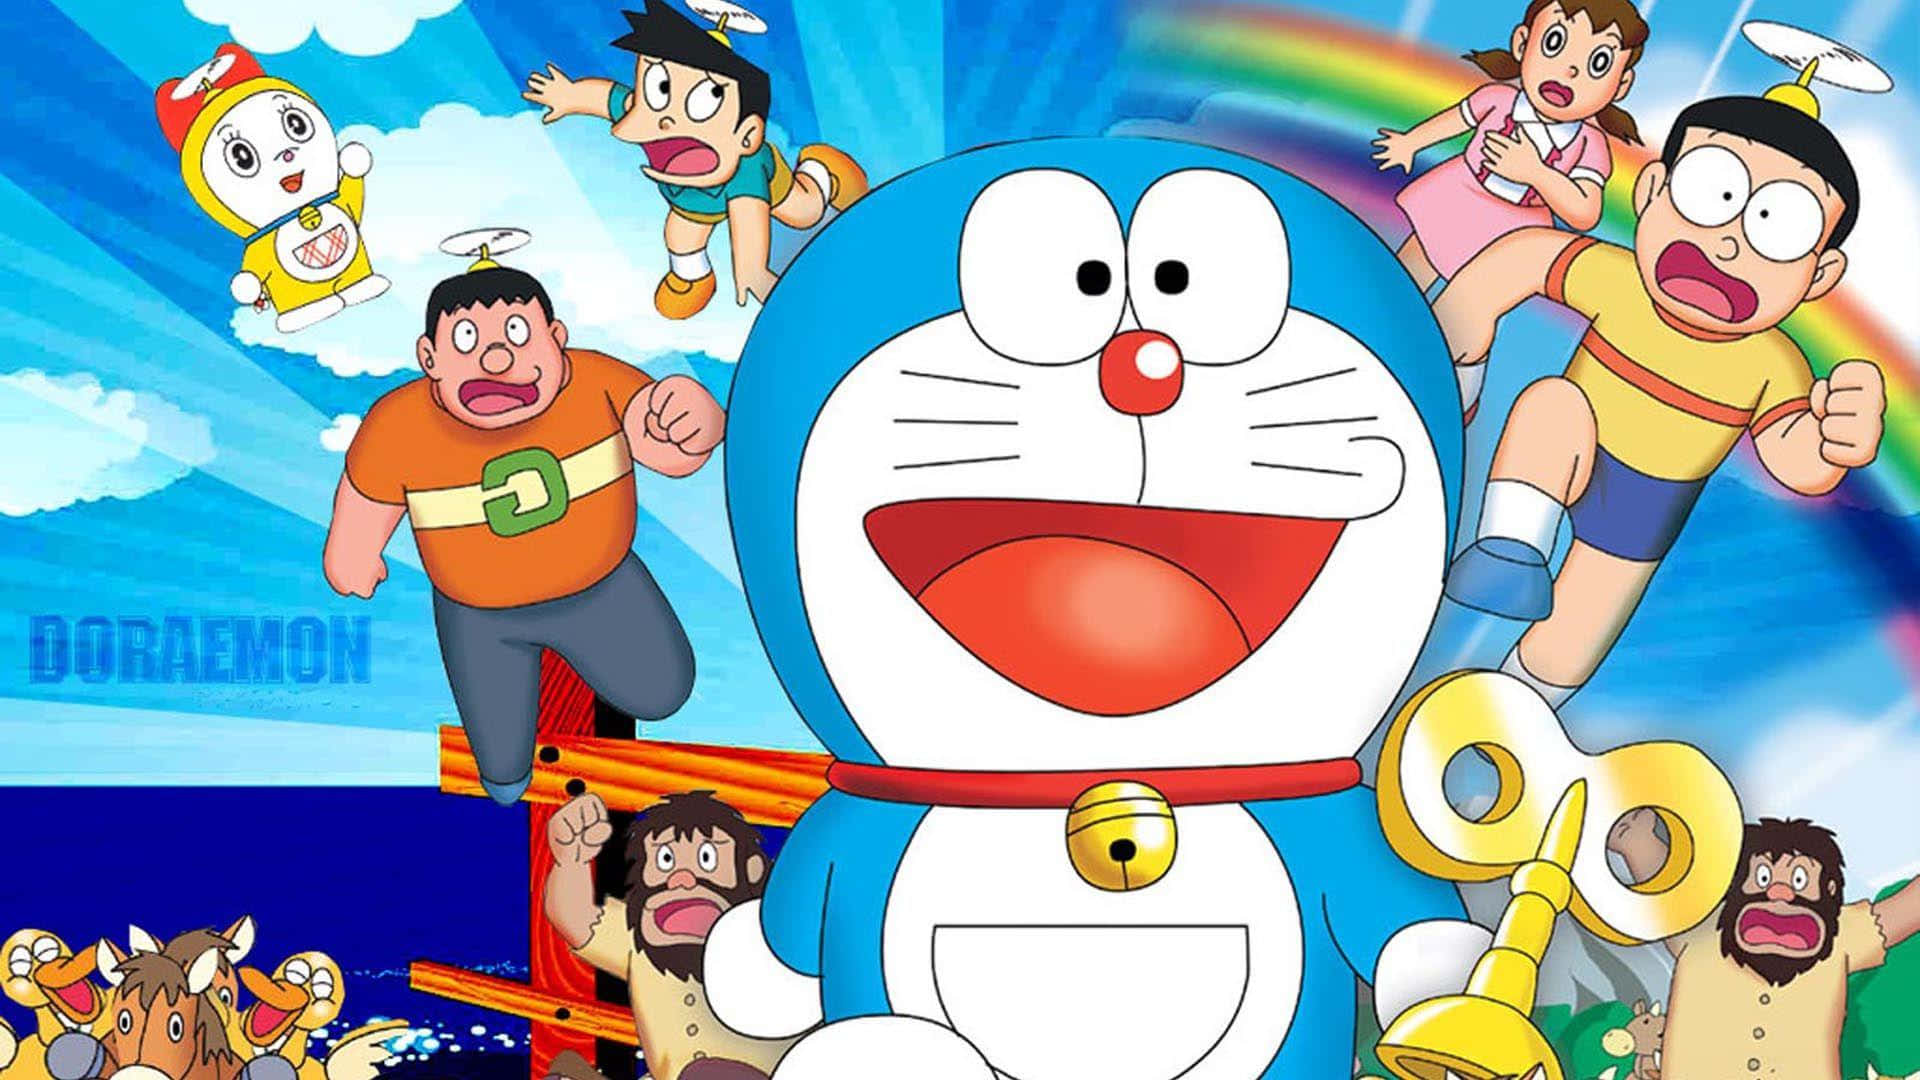 1una Imagen En Primer Plano Del Popular Personaje De Dibujos Animados Japonés, Doraemon.